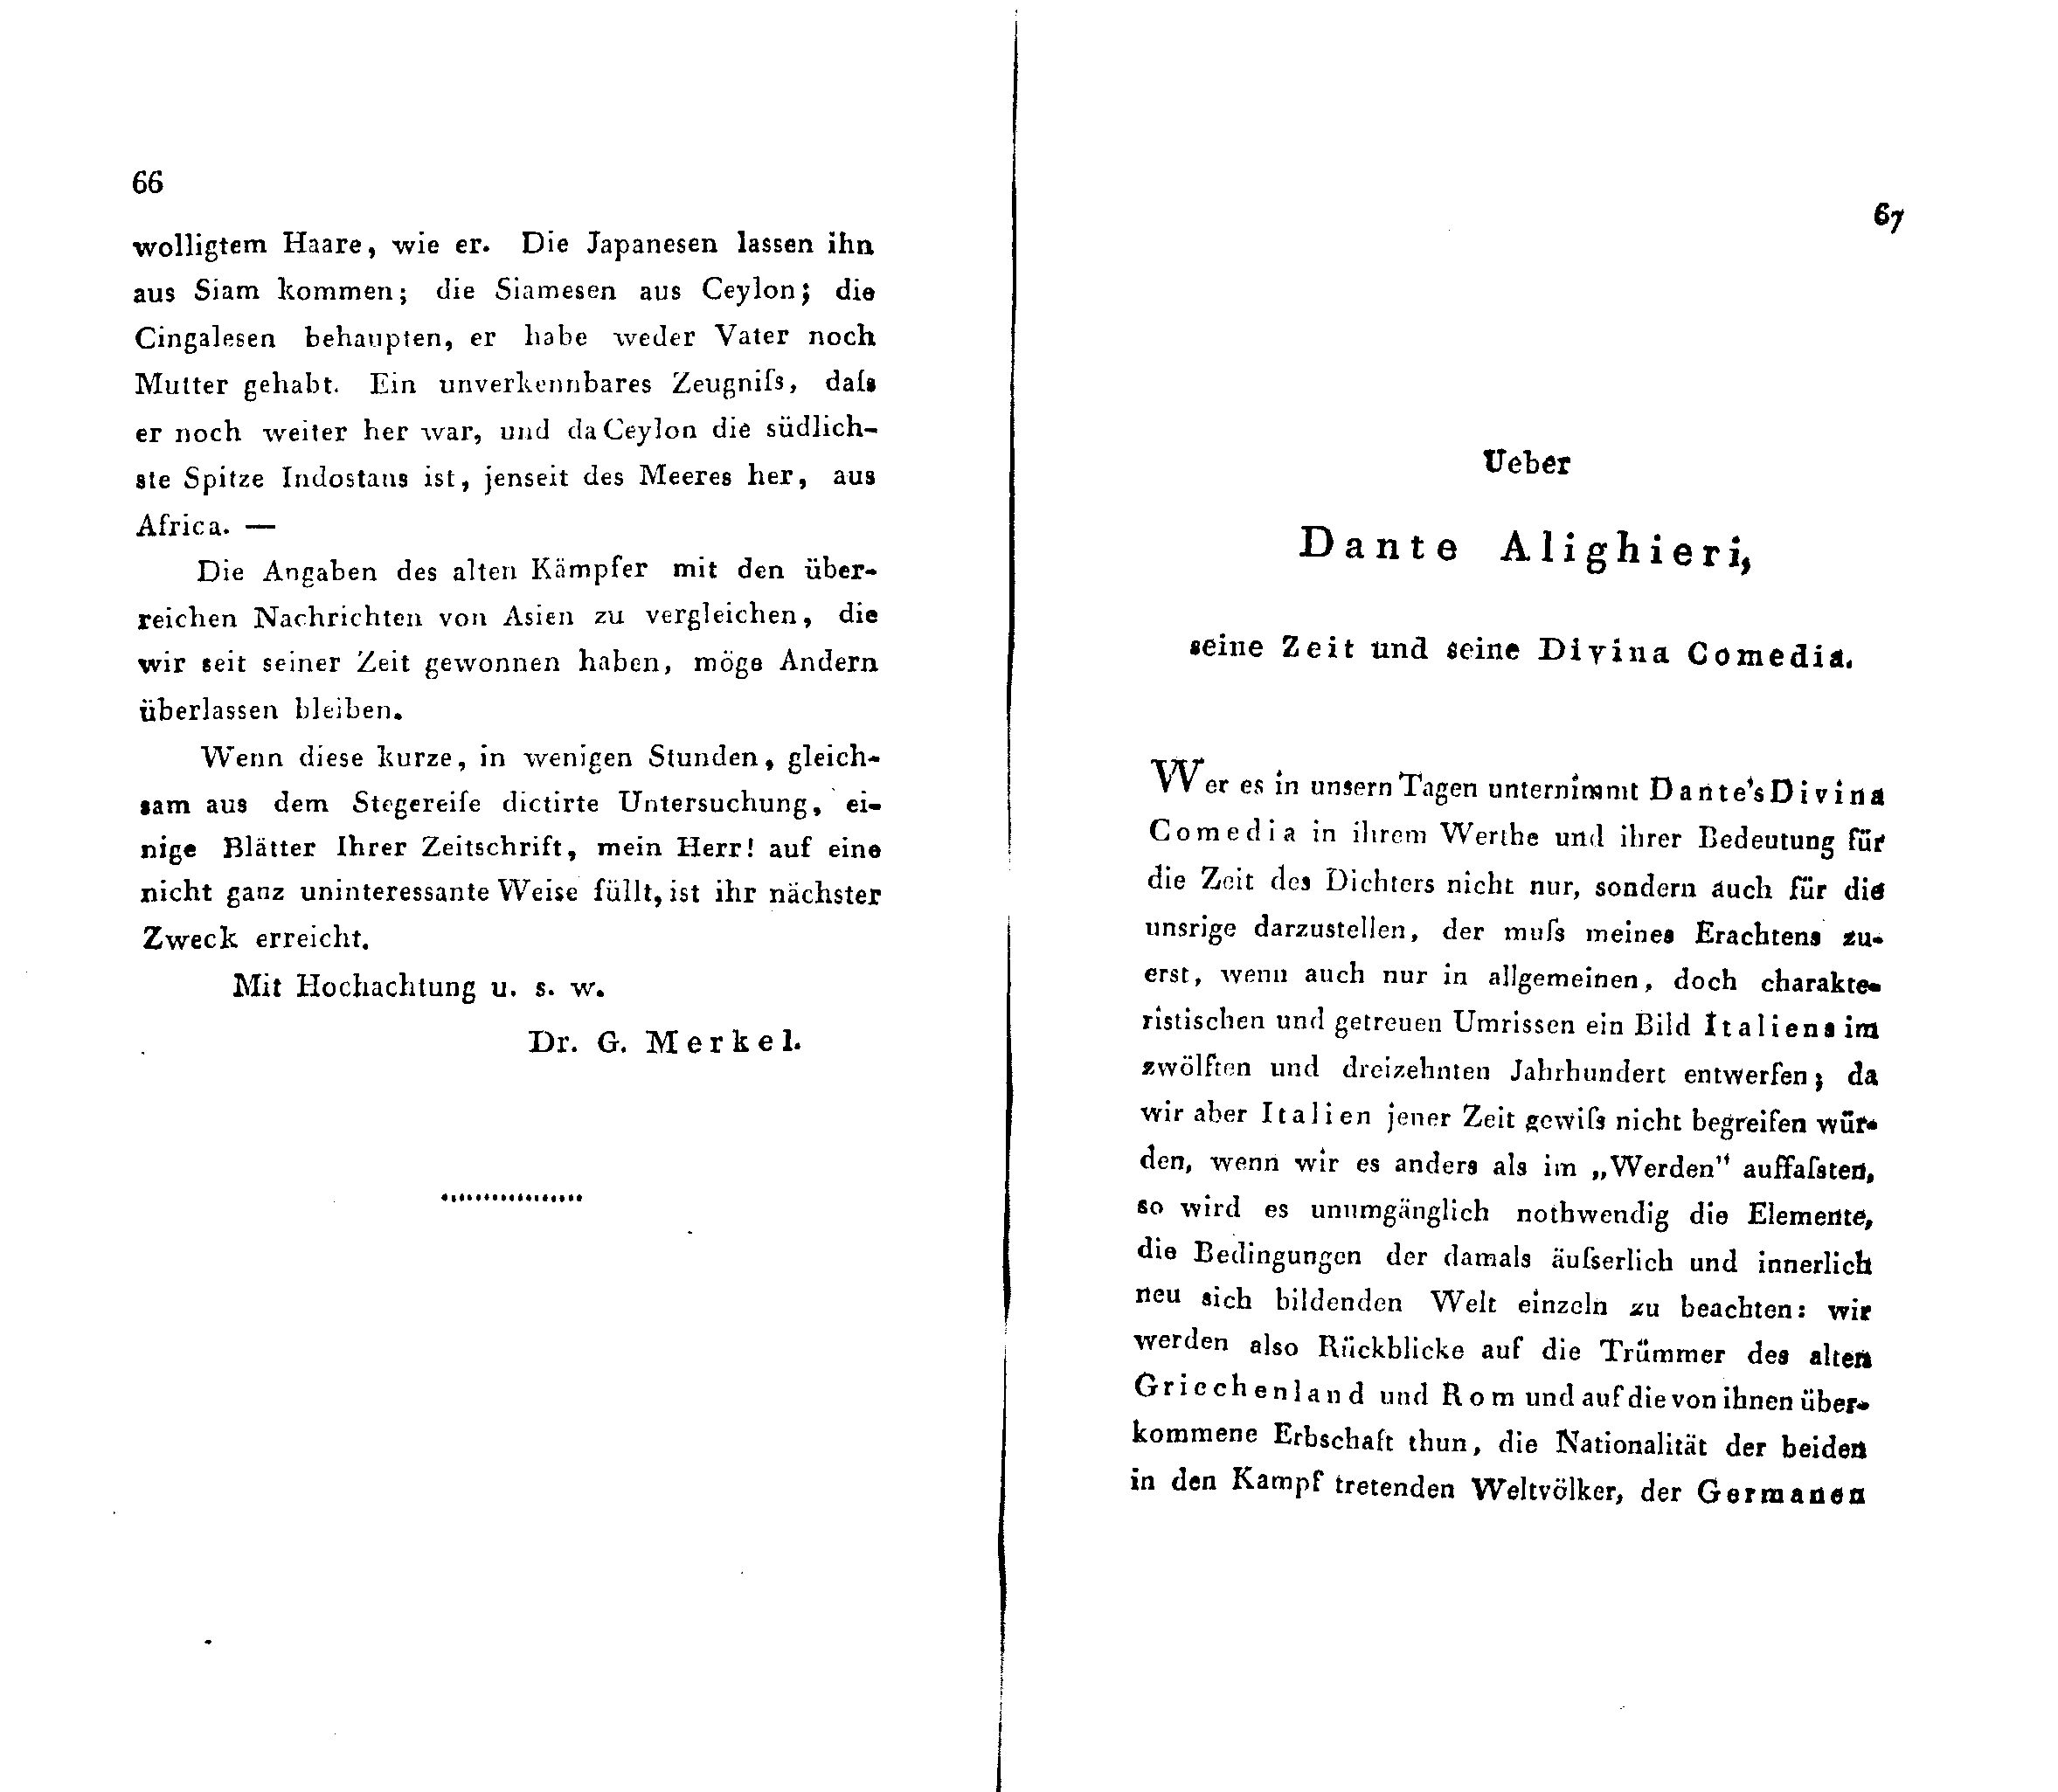 Ueber Dante Alighieri, seine Zeit und seine Divina Comedia [1] (1824) | 1. (66-67) Main body of text